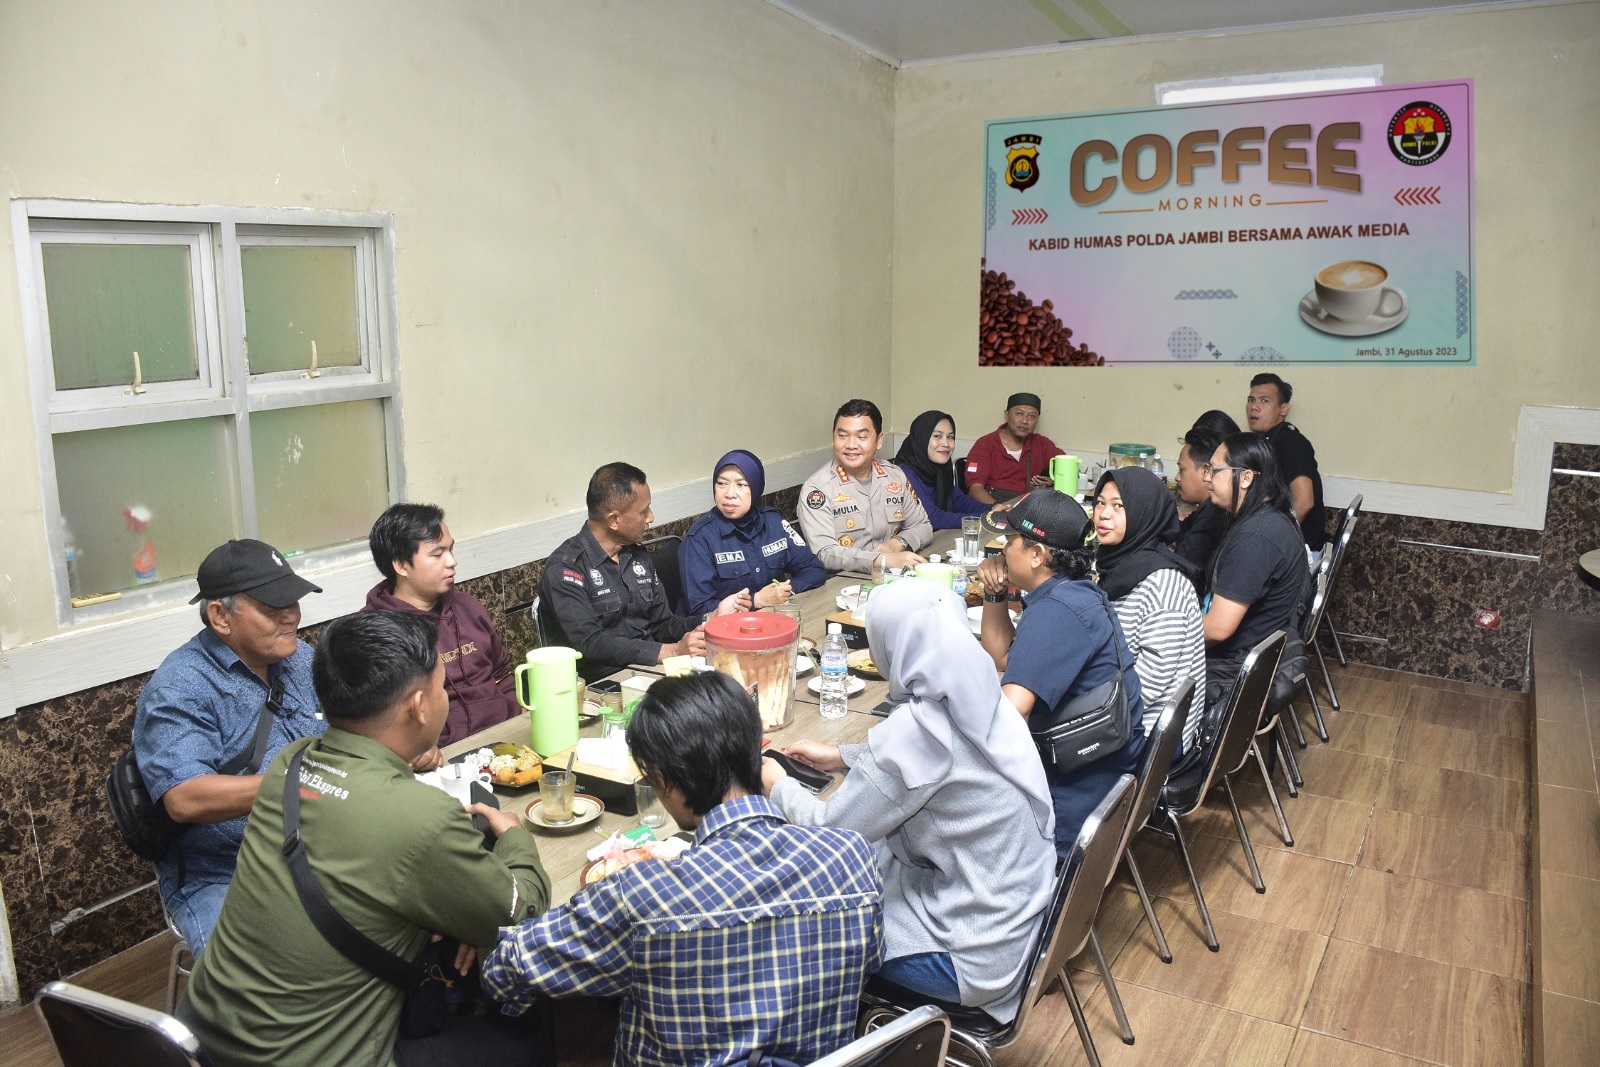 Coffee Morning Bidhumas Polda Jambi Dengan Para Awak Media Unit Polda Jambi